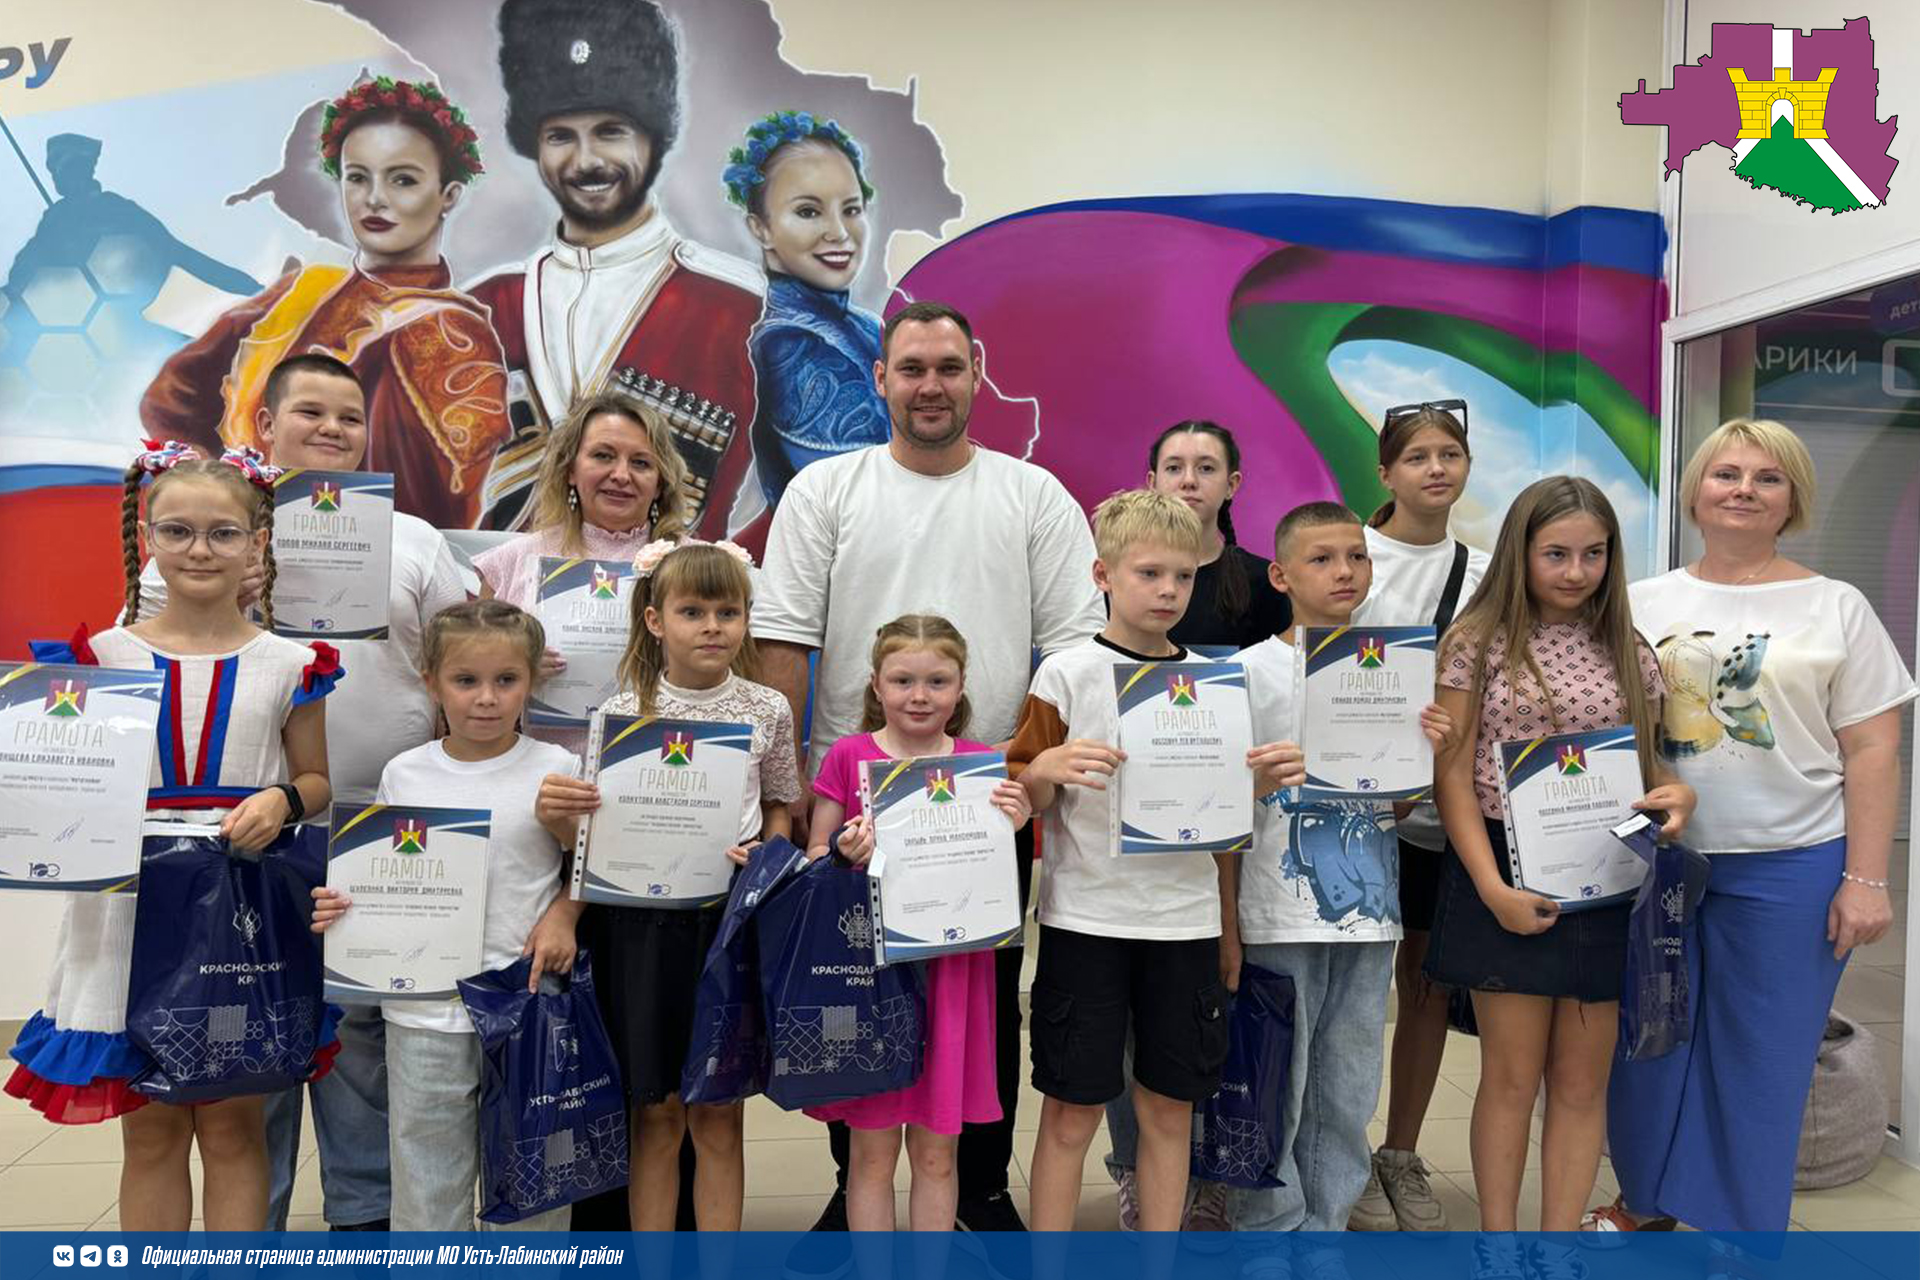 Награждение участников и победителей конкурса «Народов много-Россия одна» прошло в молодежном пространстве